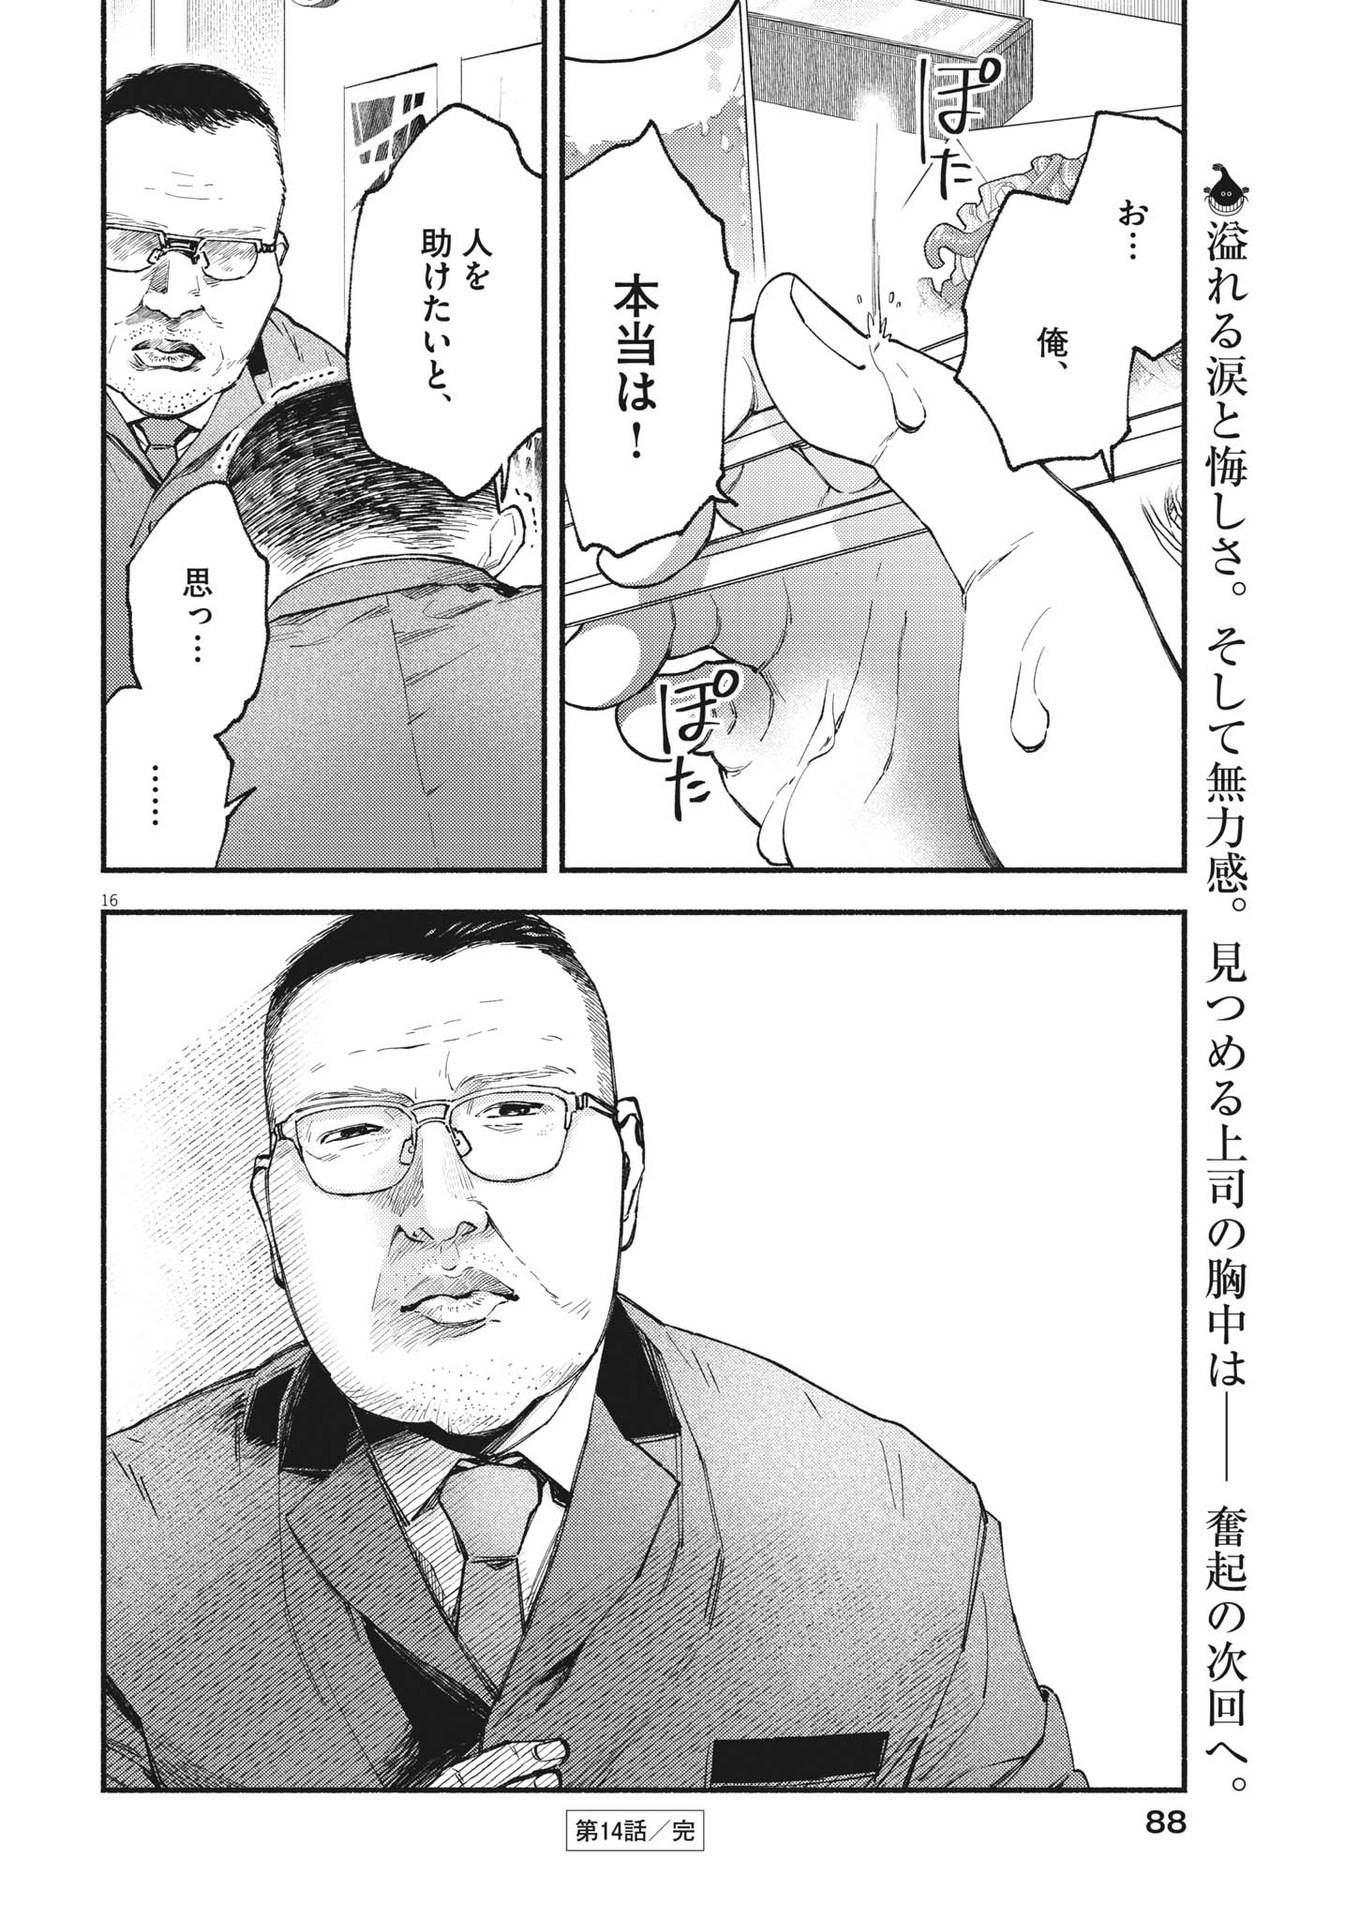 Konoyo wa Tatakau Kachi ga Aru  - Chapter 14 - Page 16